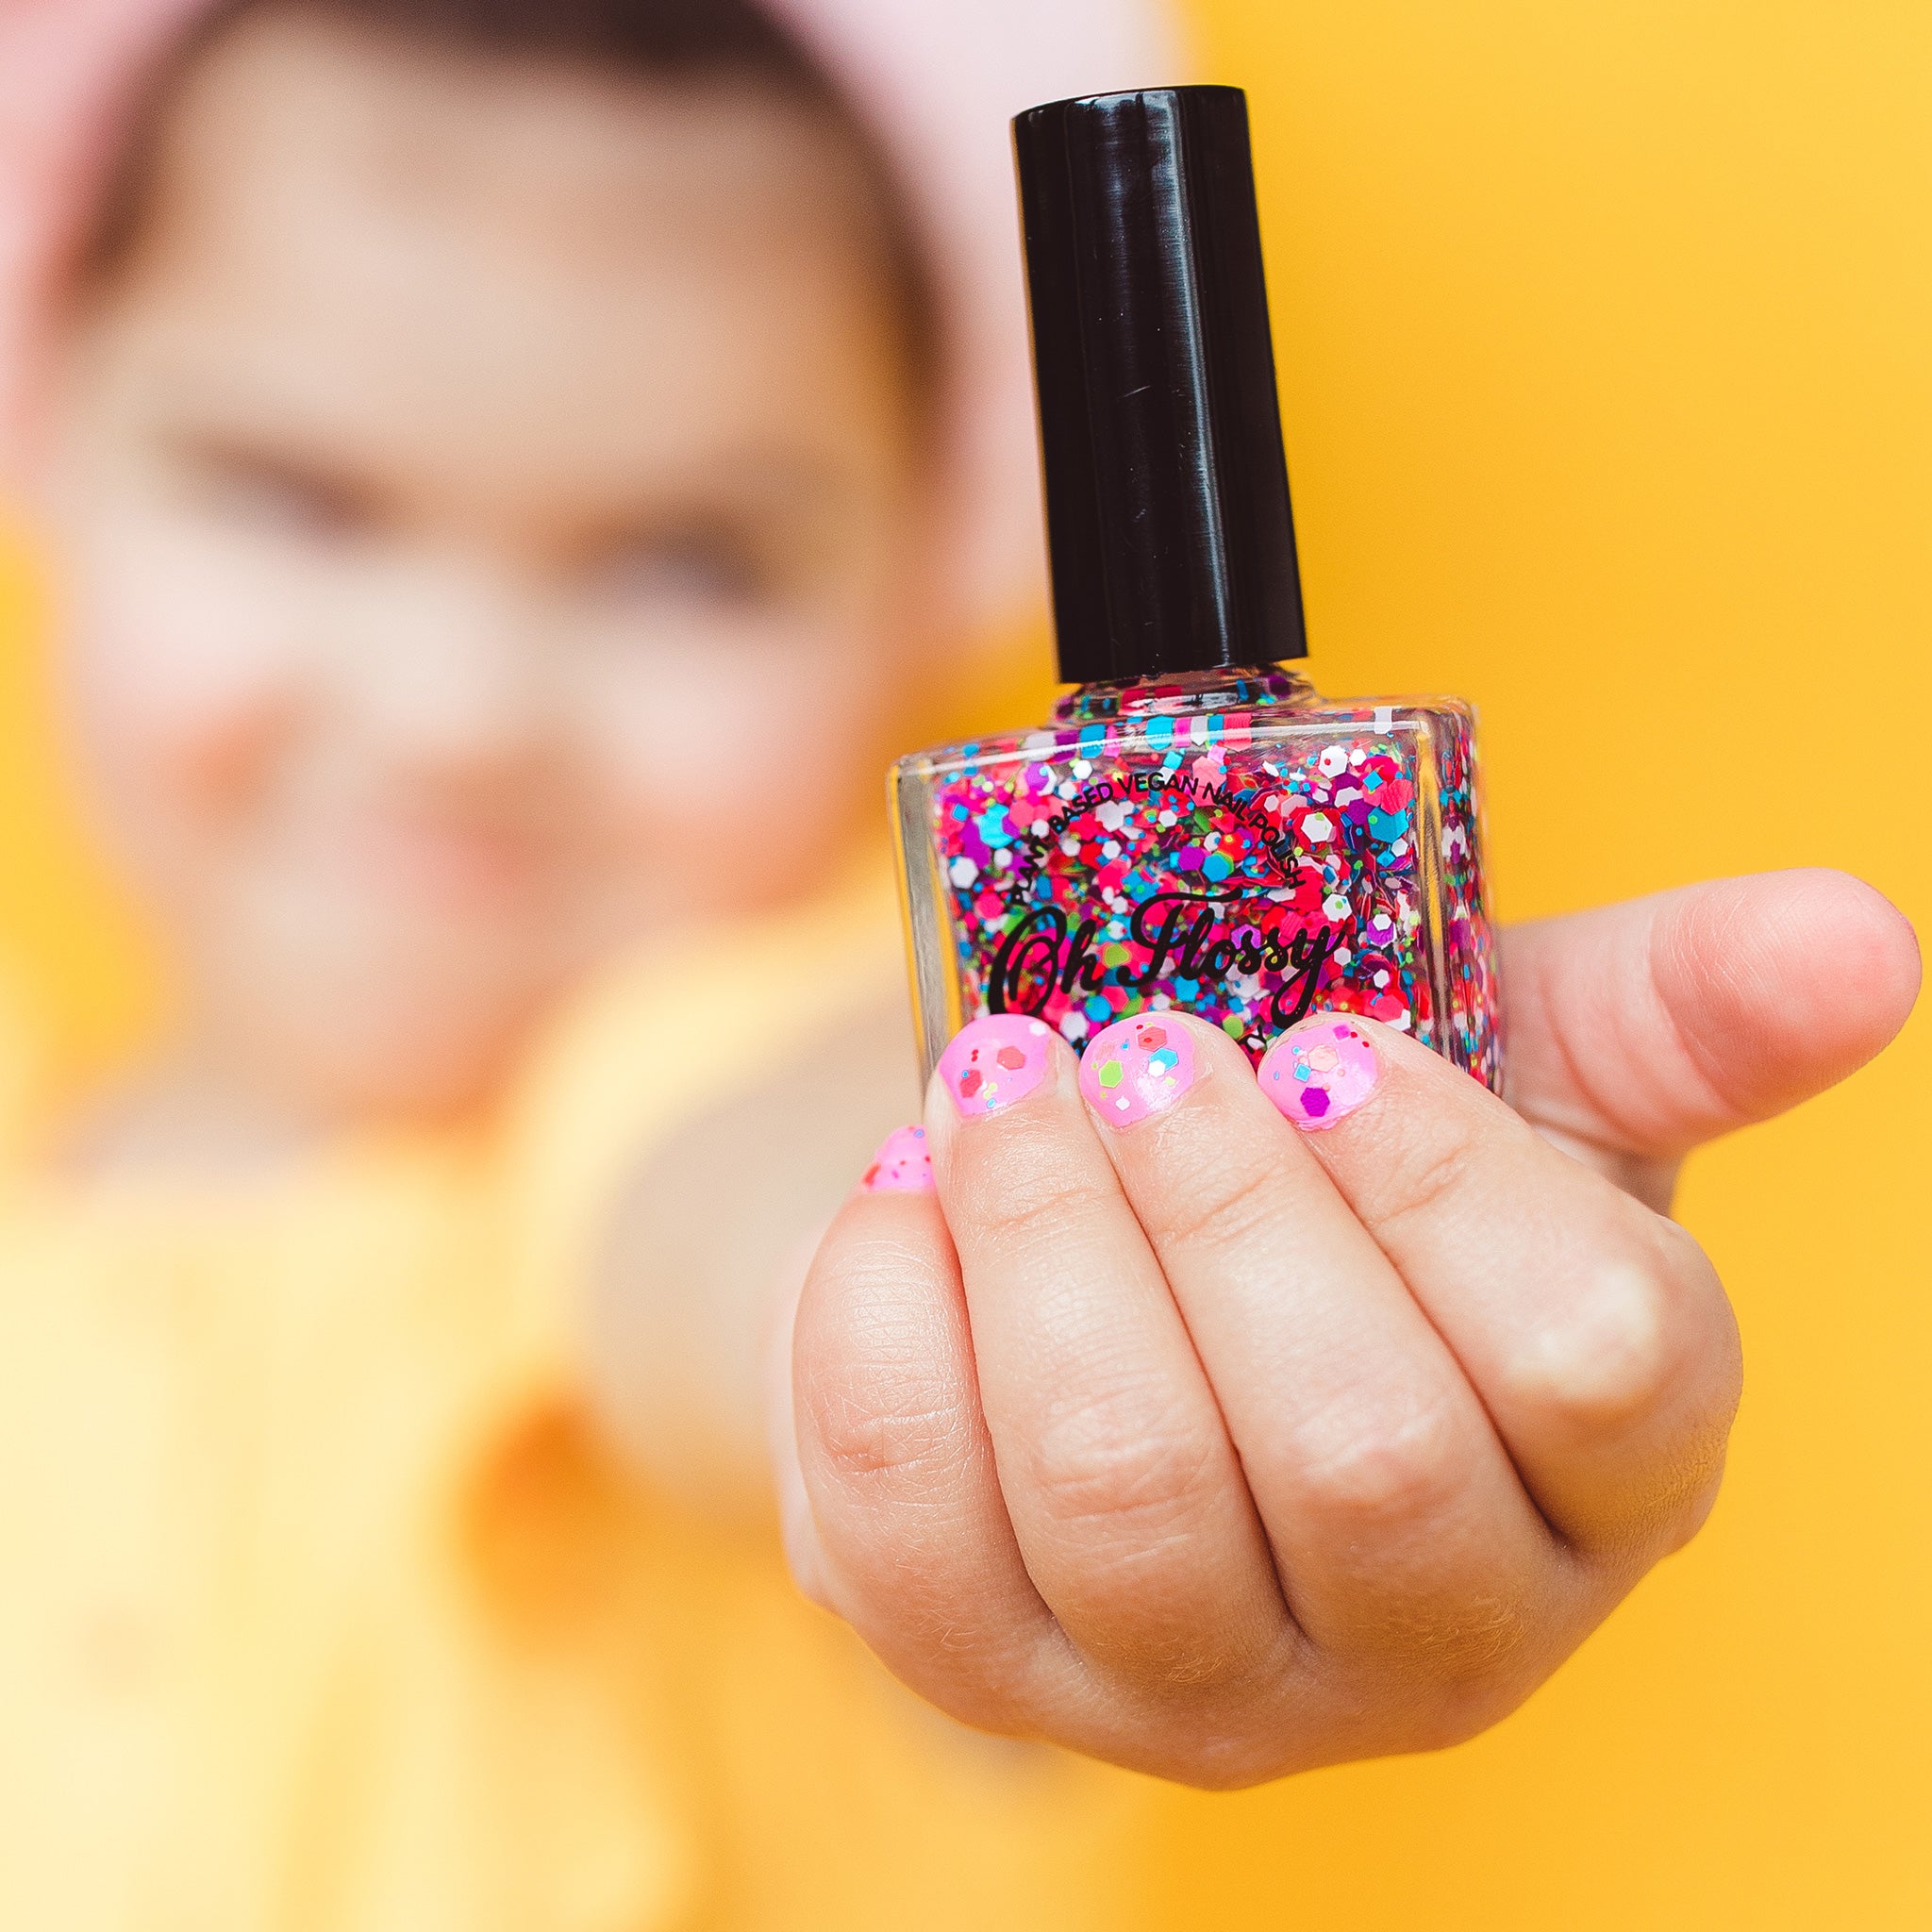 Oh-Flossy-Kids-Natural-Makeup-Nail-Polish-Confetti-Glitter_